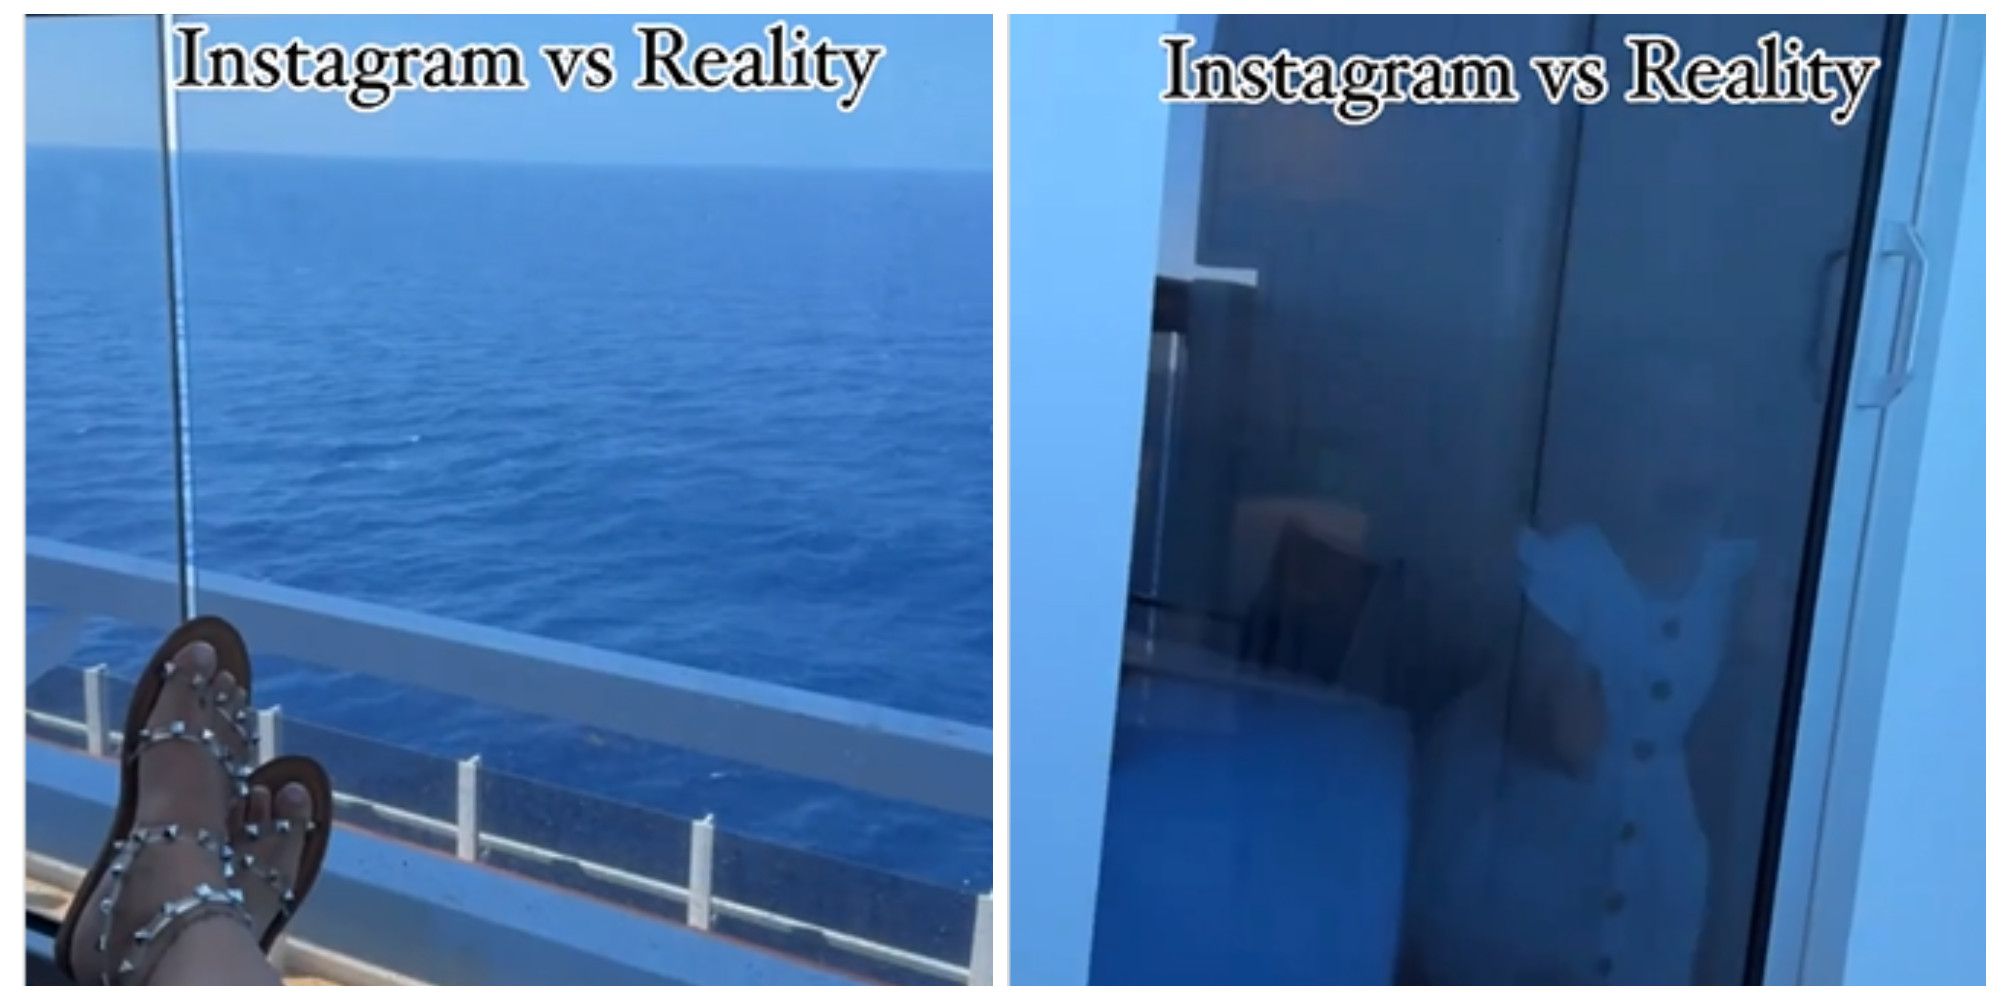 Ovako izgleda odmor sa detetom na Instagramu i u realnosti: Video koji je podelio internet